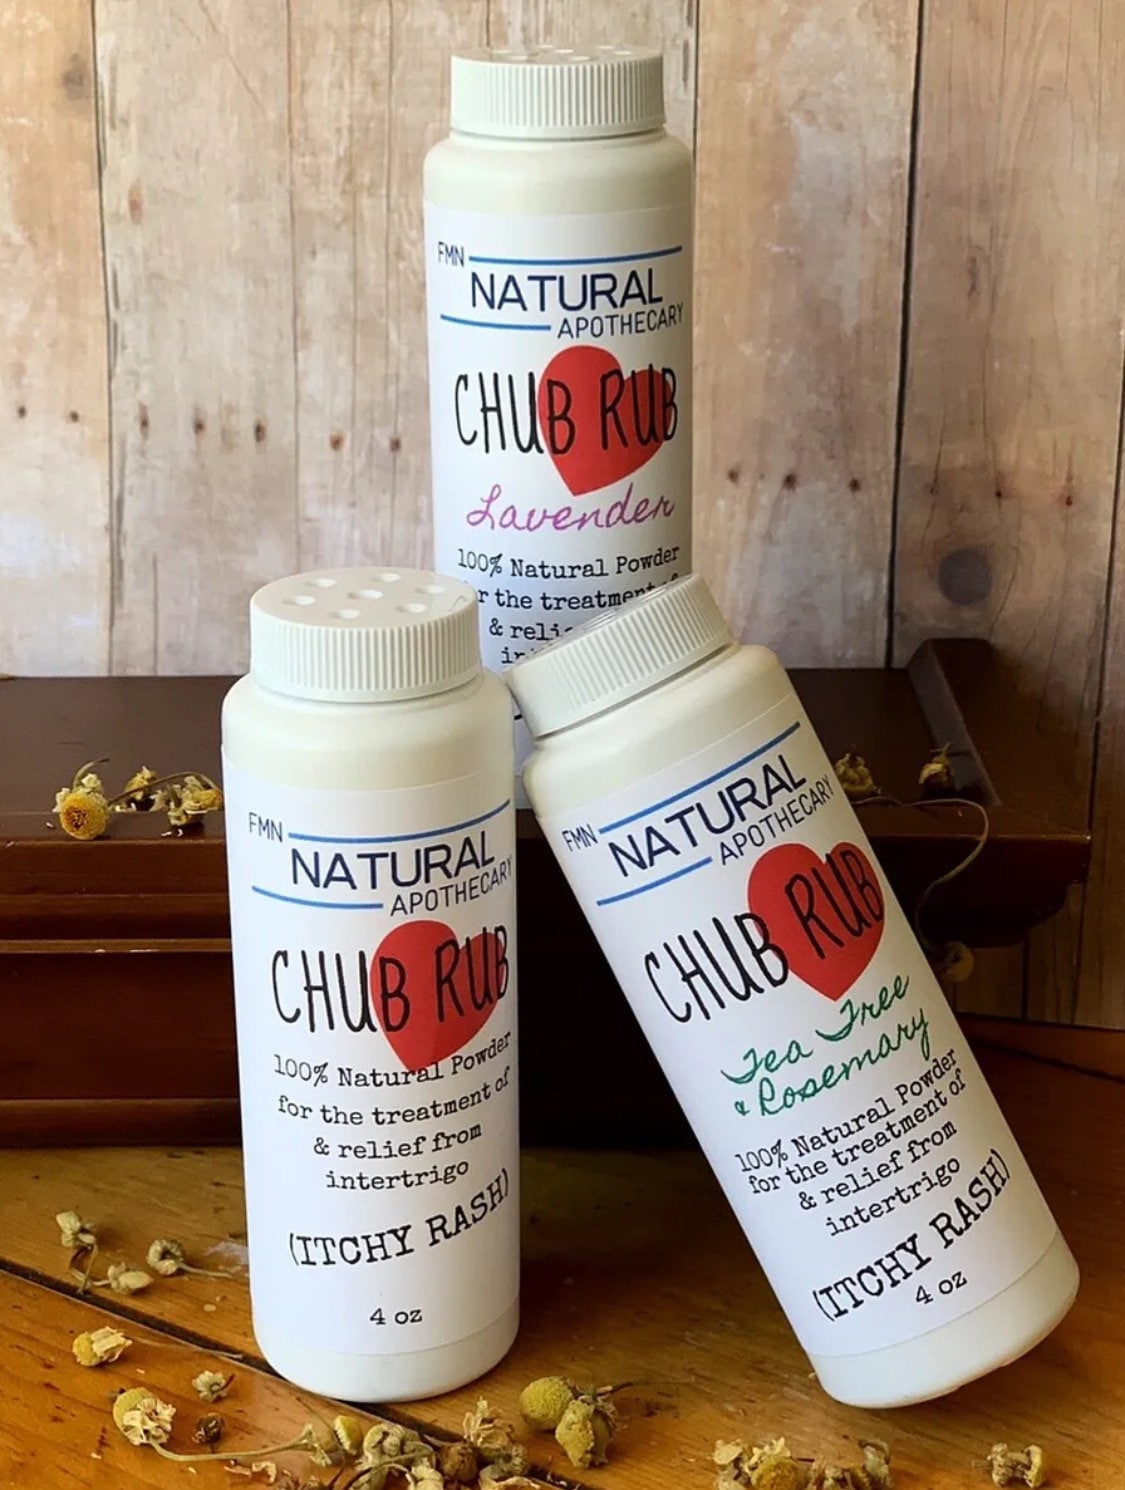 Chub Rub Natural Powder by FMN Natural Apothecary 